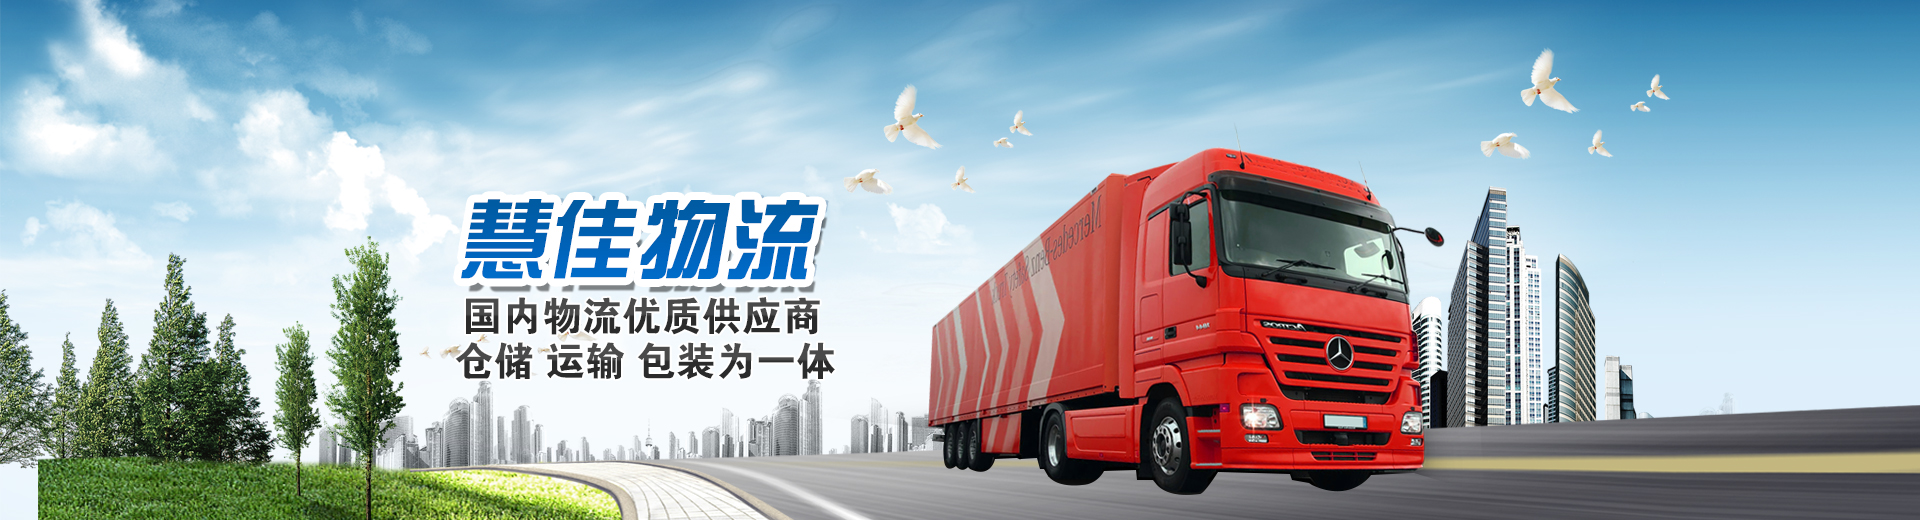 上海哪家物流代运公司好,第三方物流运输公司,上海到金华货运公司,上海到无锡危险品物流,危险品货物运输物流公司,上海危险品物流运输公司